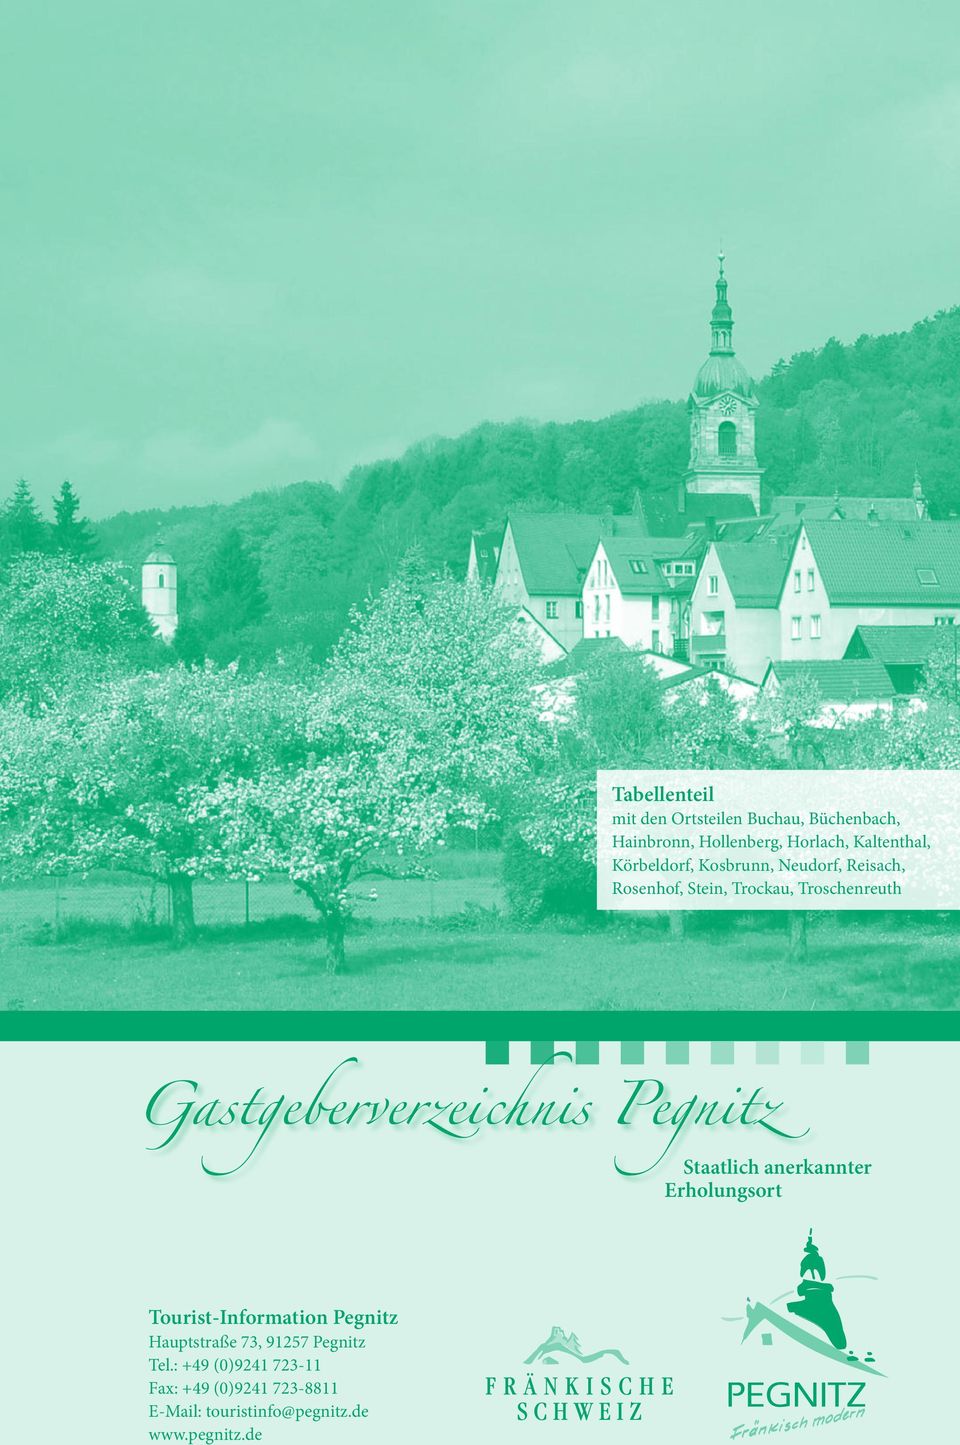 Gastgeberverzeichnis Pegnitz Staatlich anerkannter Erholungsort Tourist-Information Pegnitz